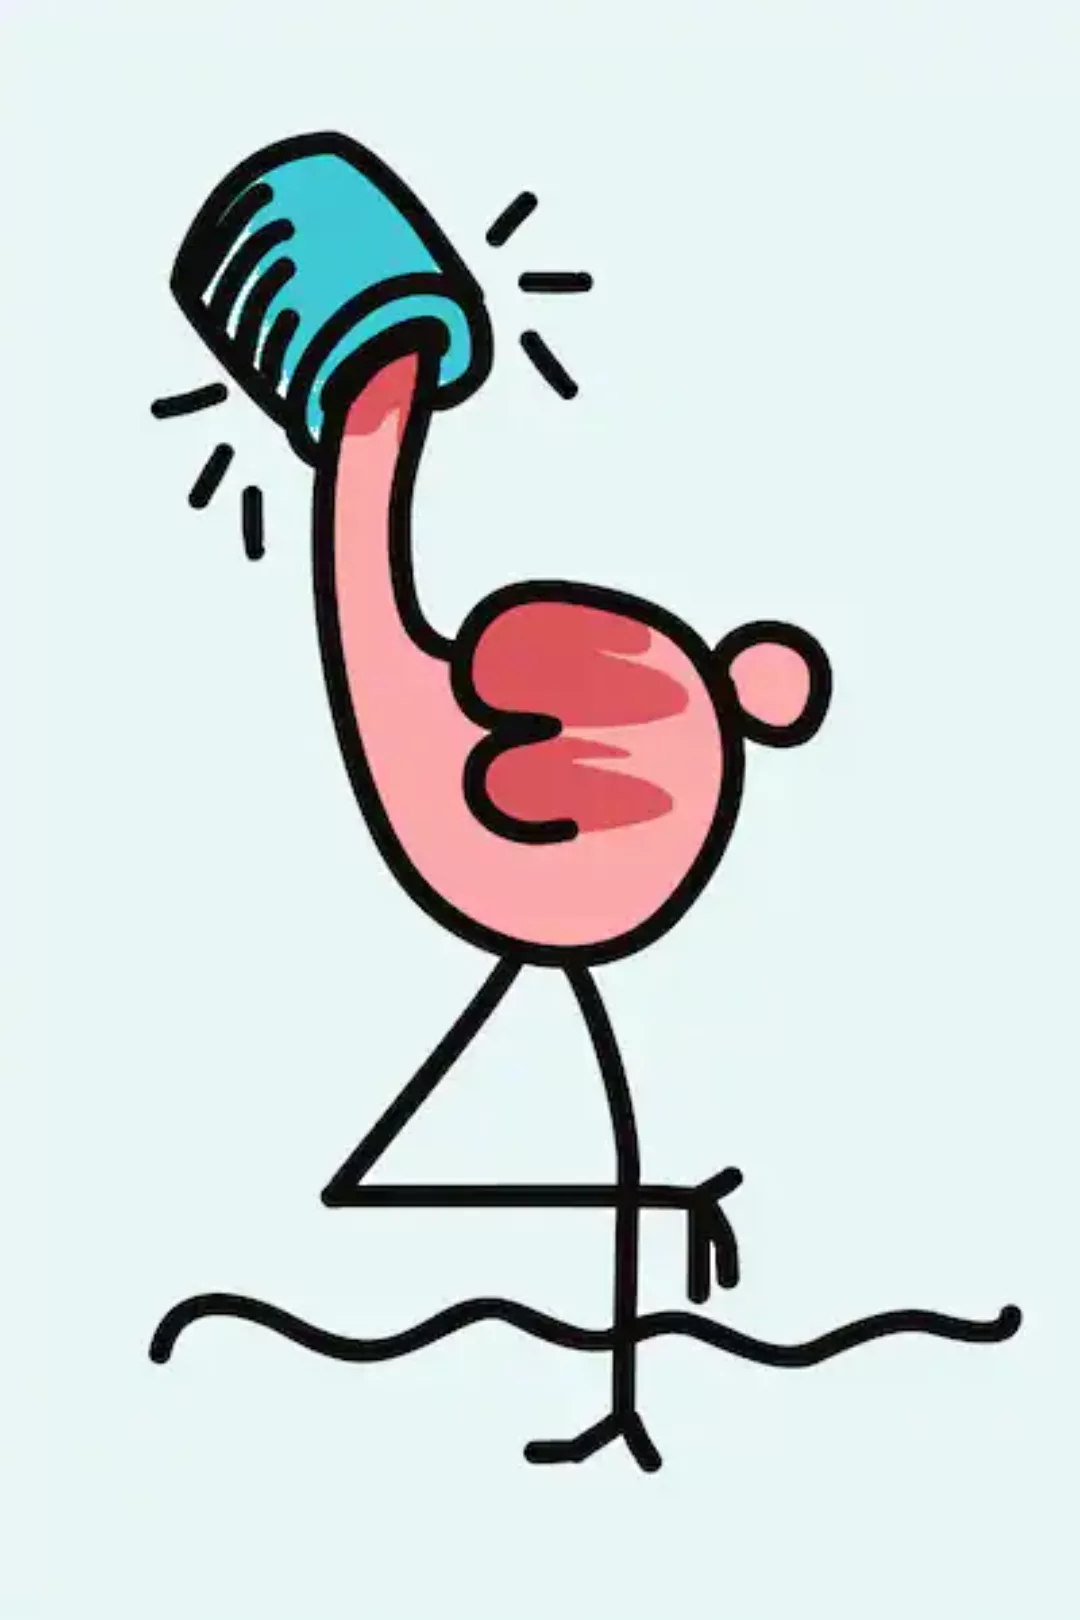 queence Leinwandbild "Flamingo" günstig online kaufen